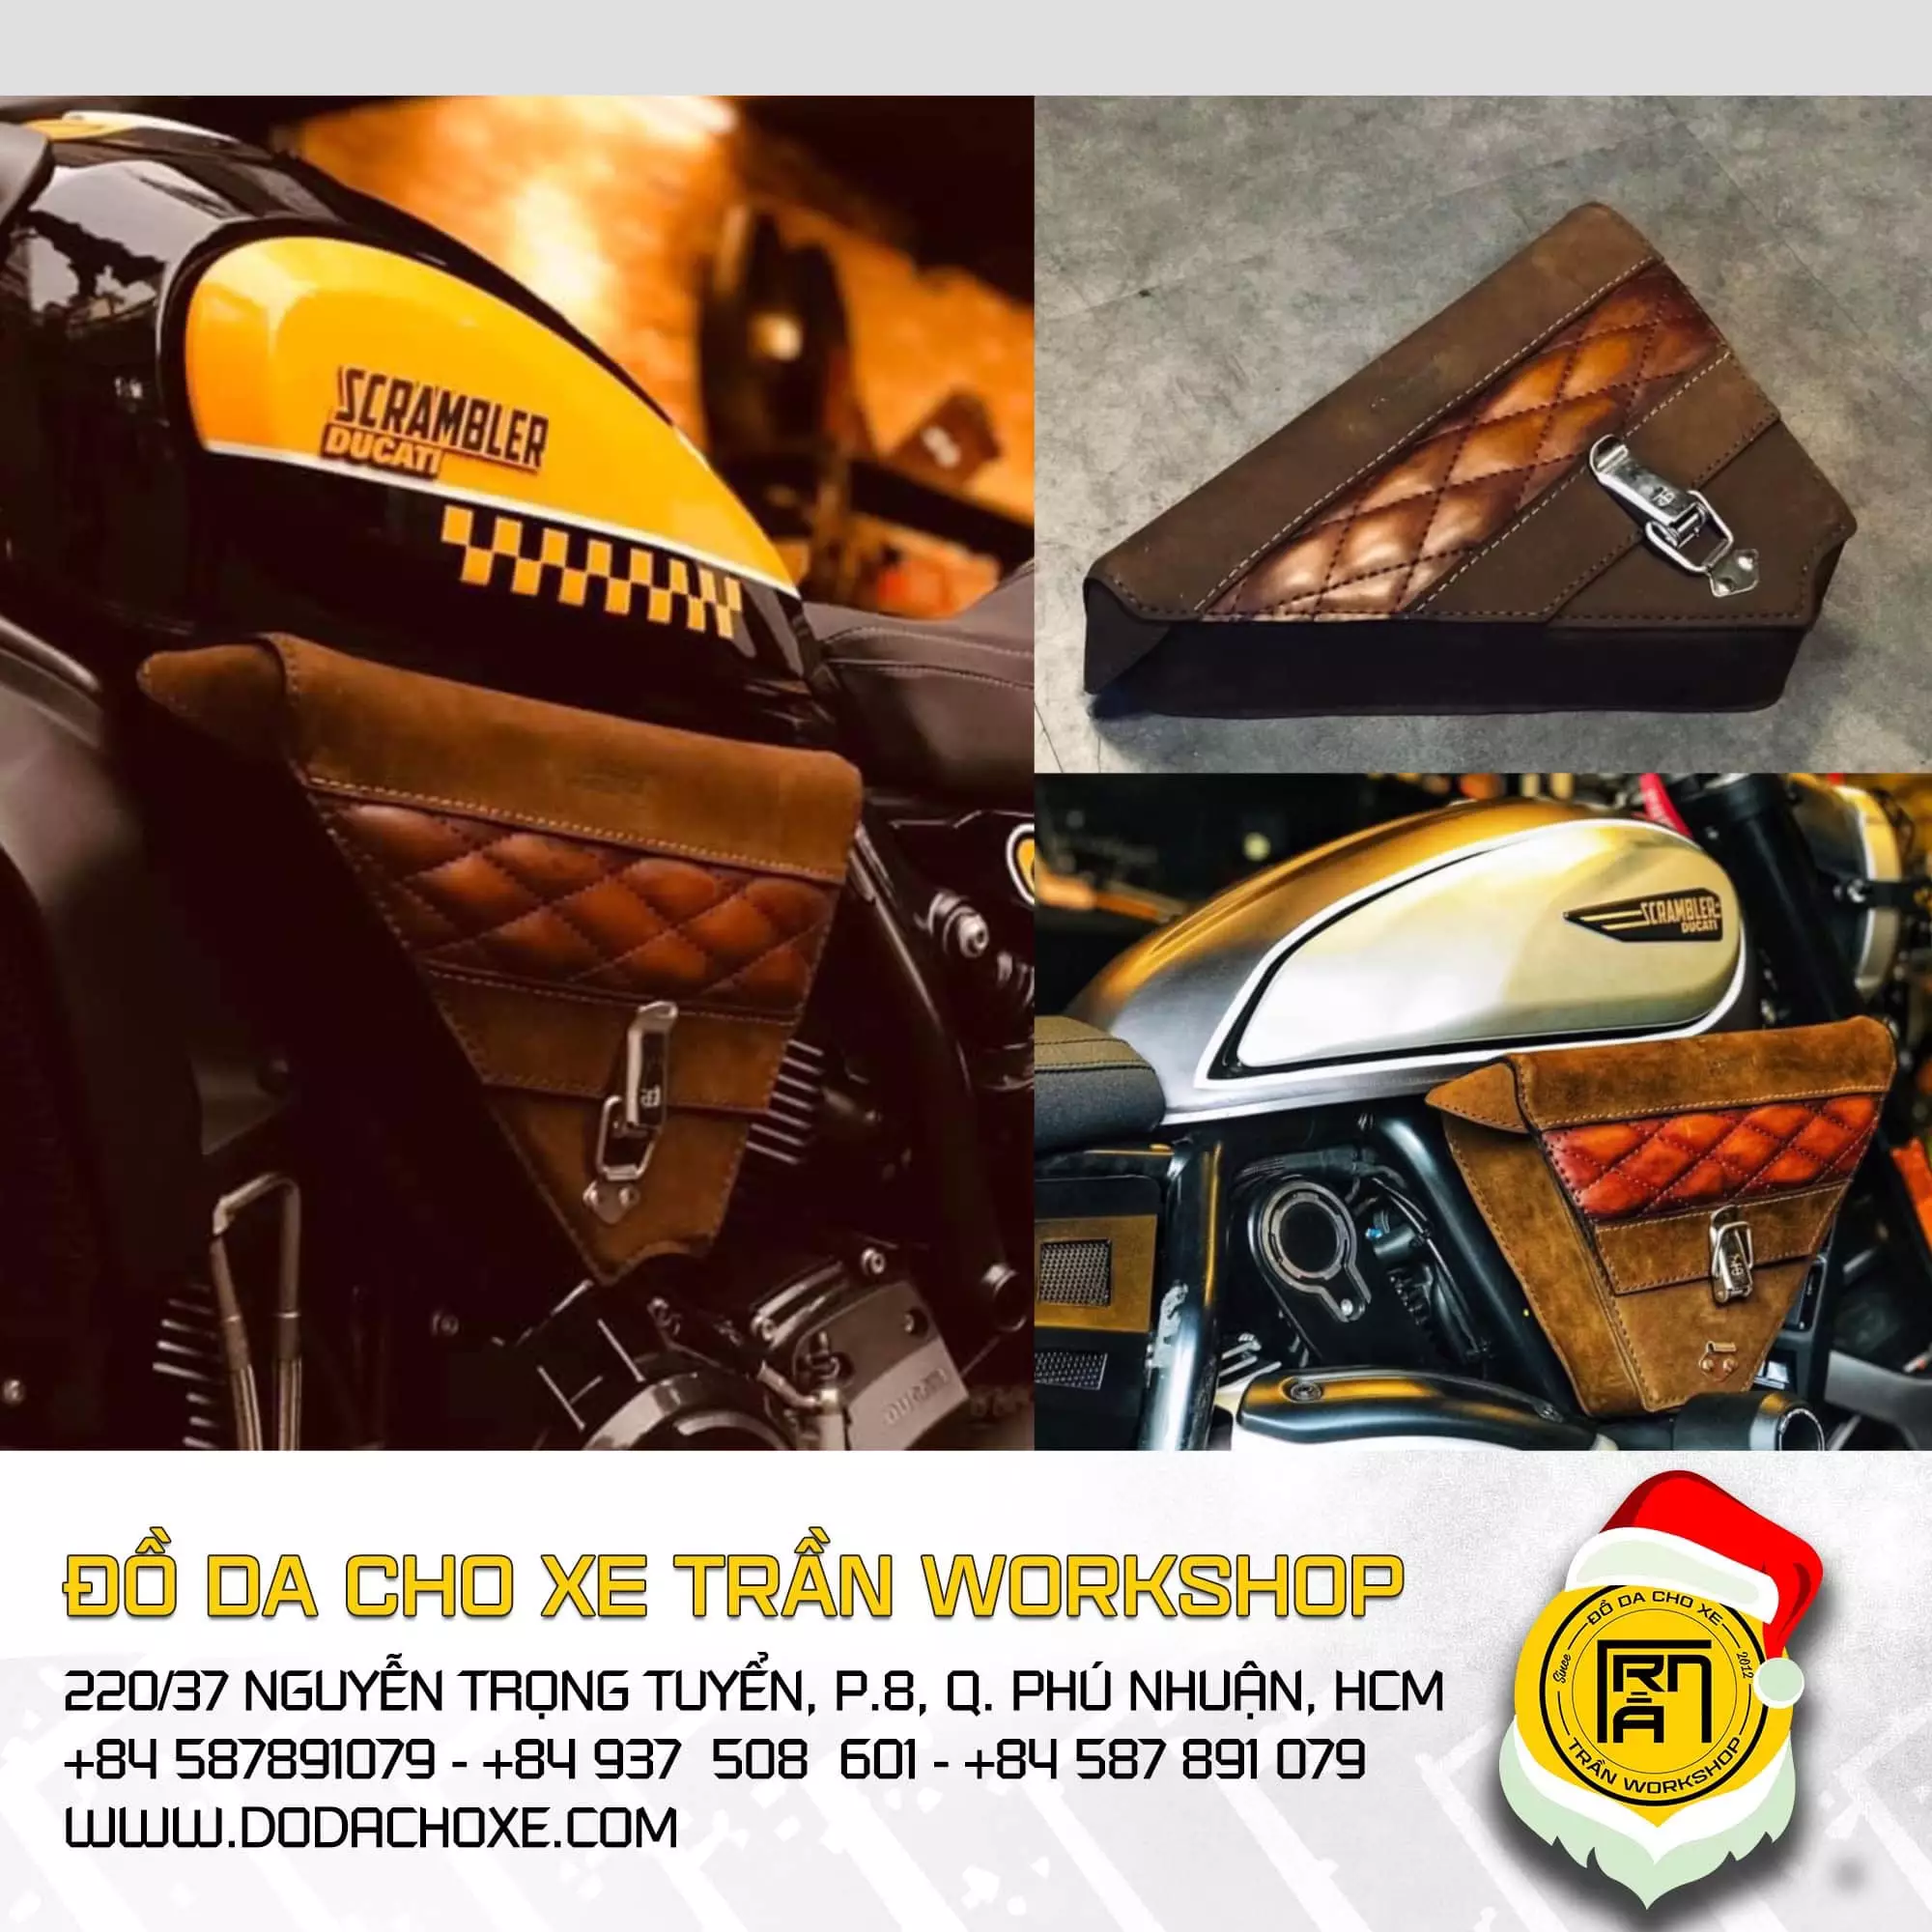 Ducati Scrambler 2022 - Đồ Da Cho Xe Trần Workshop